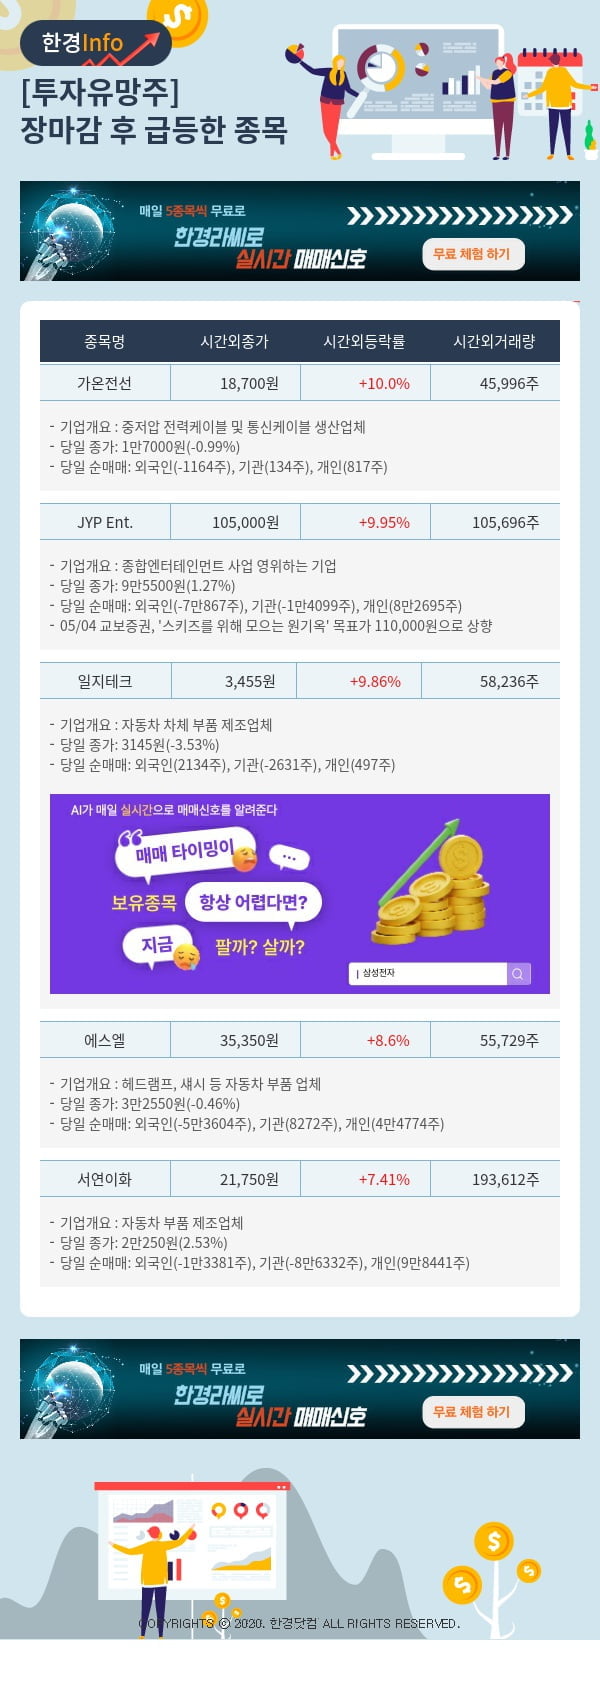 투자유망주-어제 장마감 이후 급등한 종목 가온전선, JYP Ent.